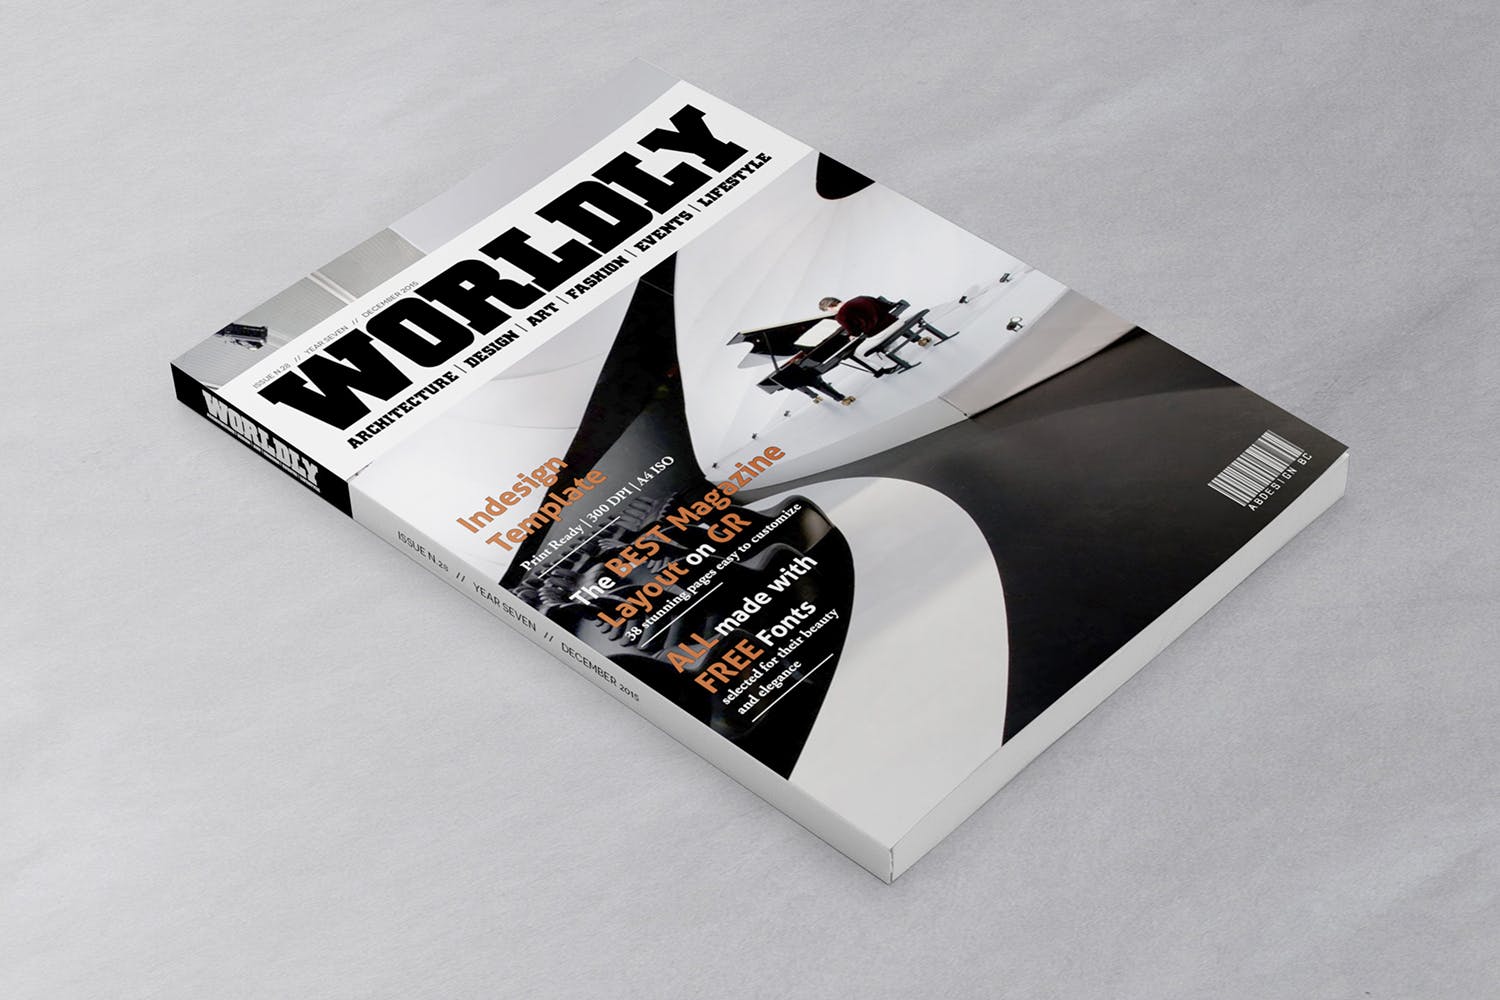 杂志封面设计45度角预览样机第一素材精选 Magazine Cover Mockup 45 Degree插图(2)